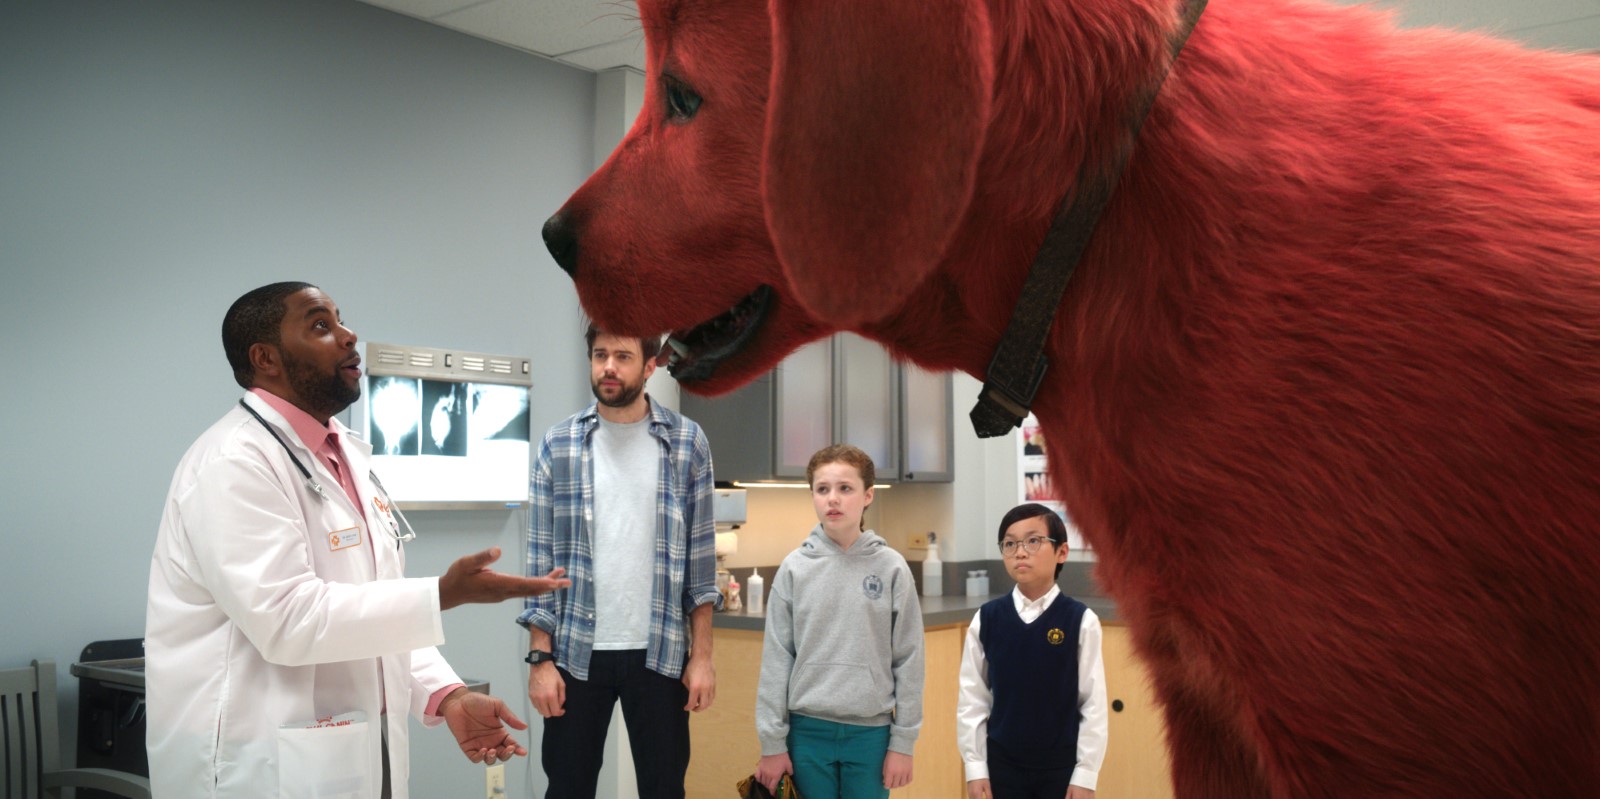 Szenenbild 4 vom Film Clifford der große rote Hund